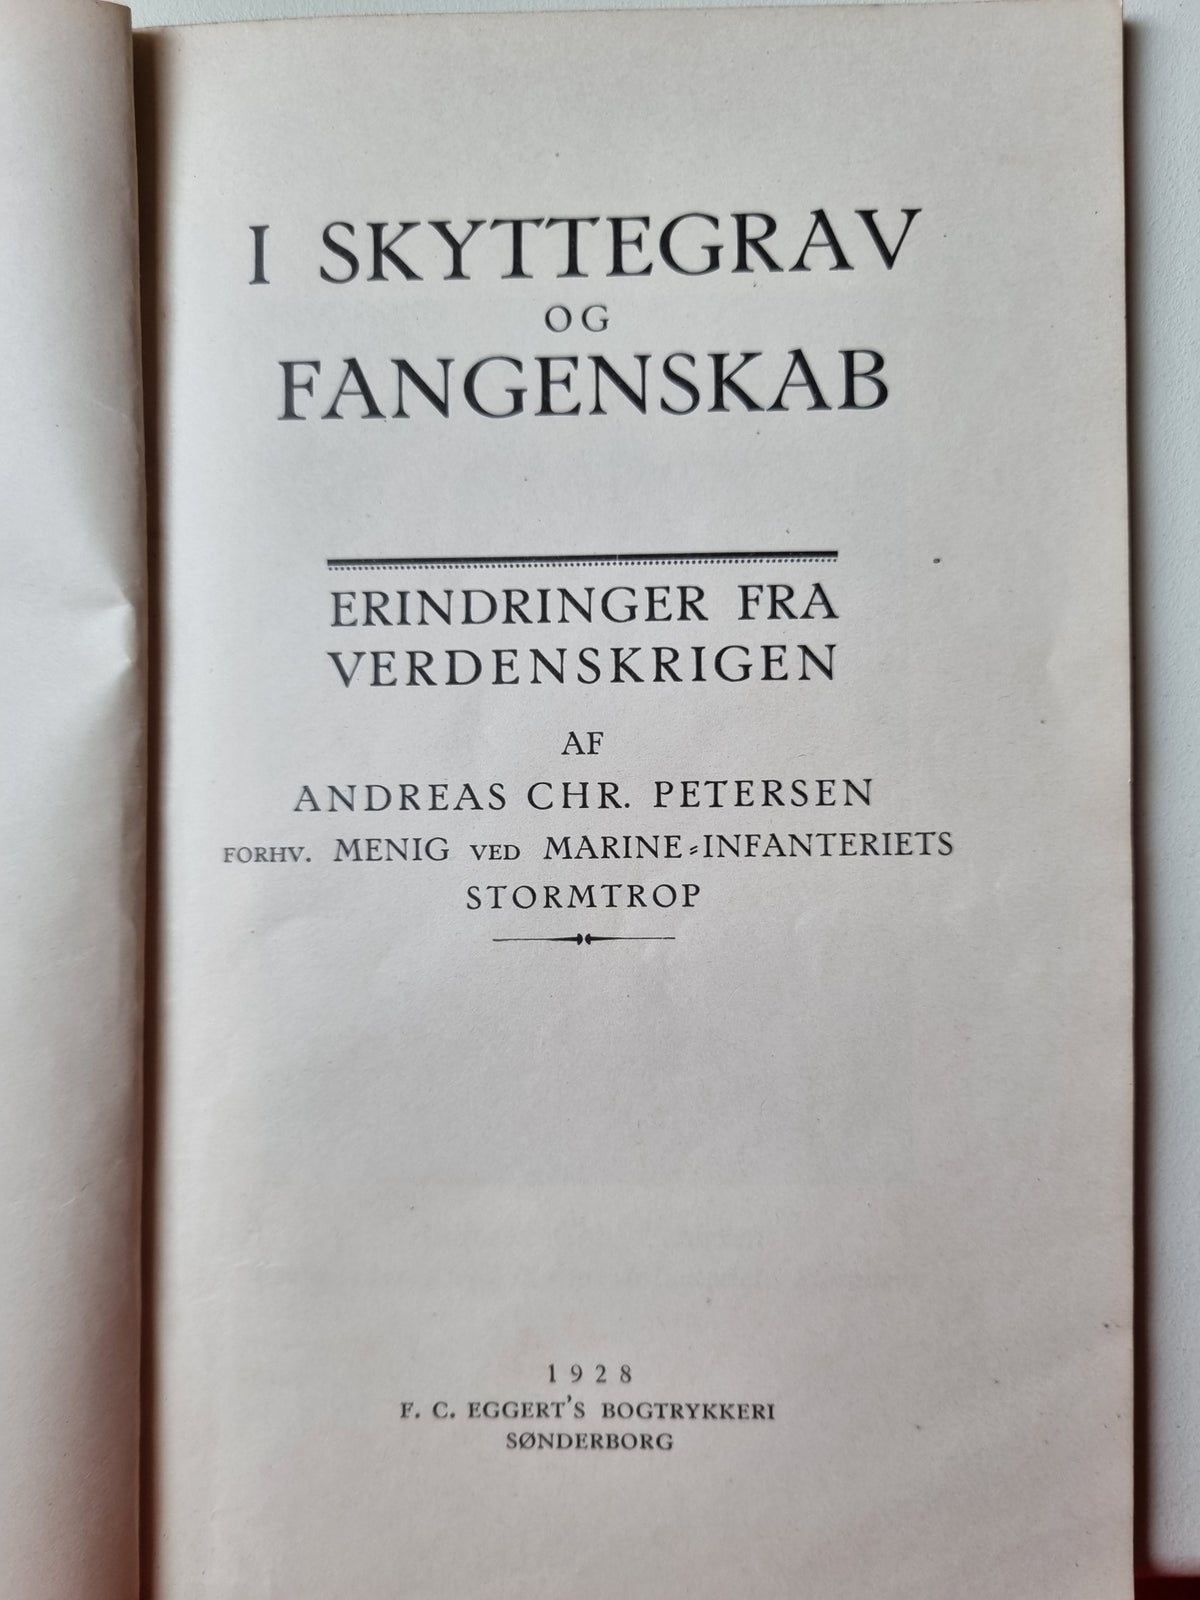 I Skyttegrav og Fangenskab, Andreas Chr. Petersen, år 1928